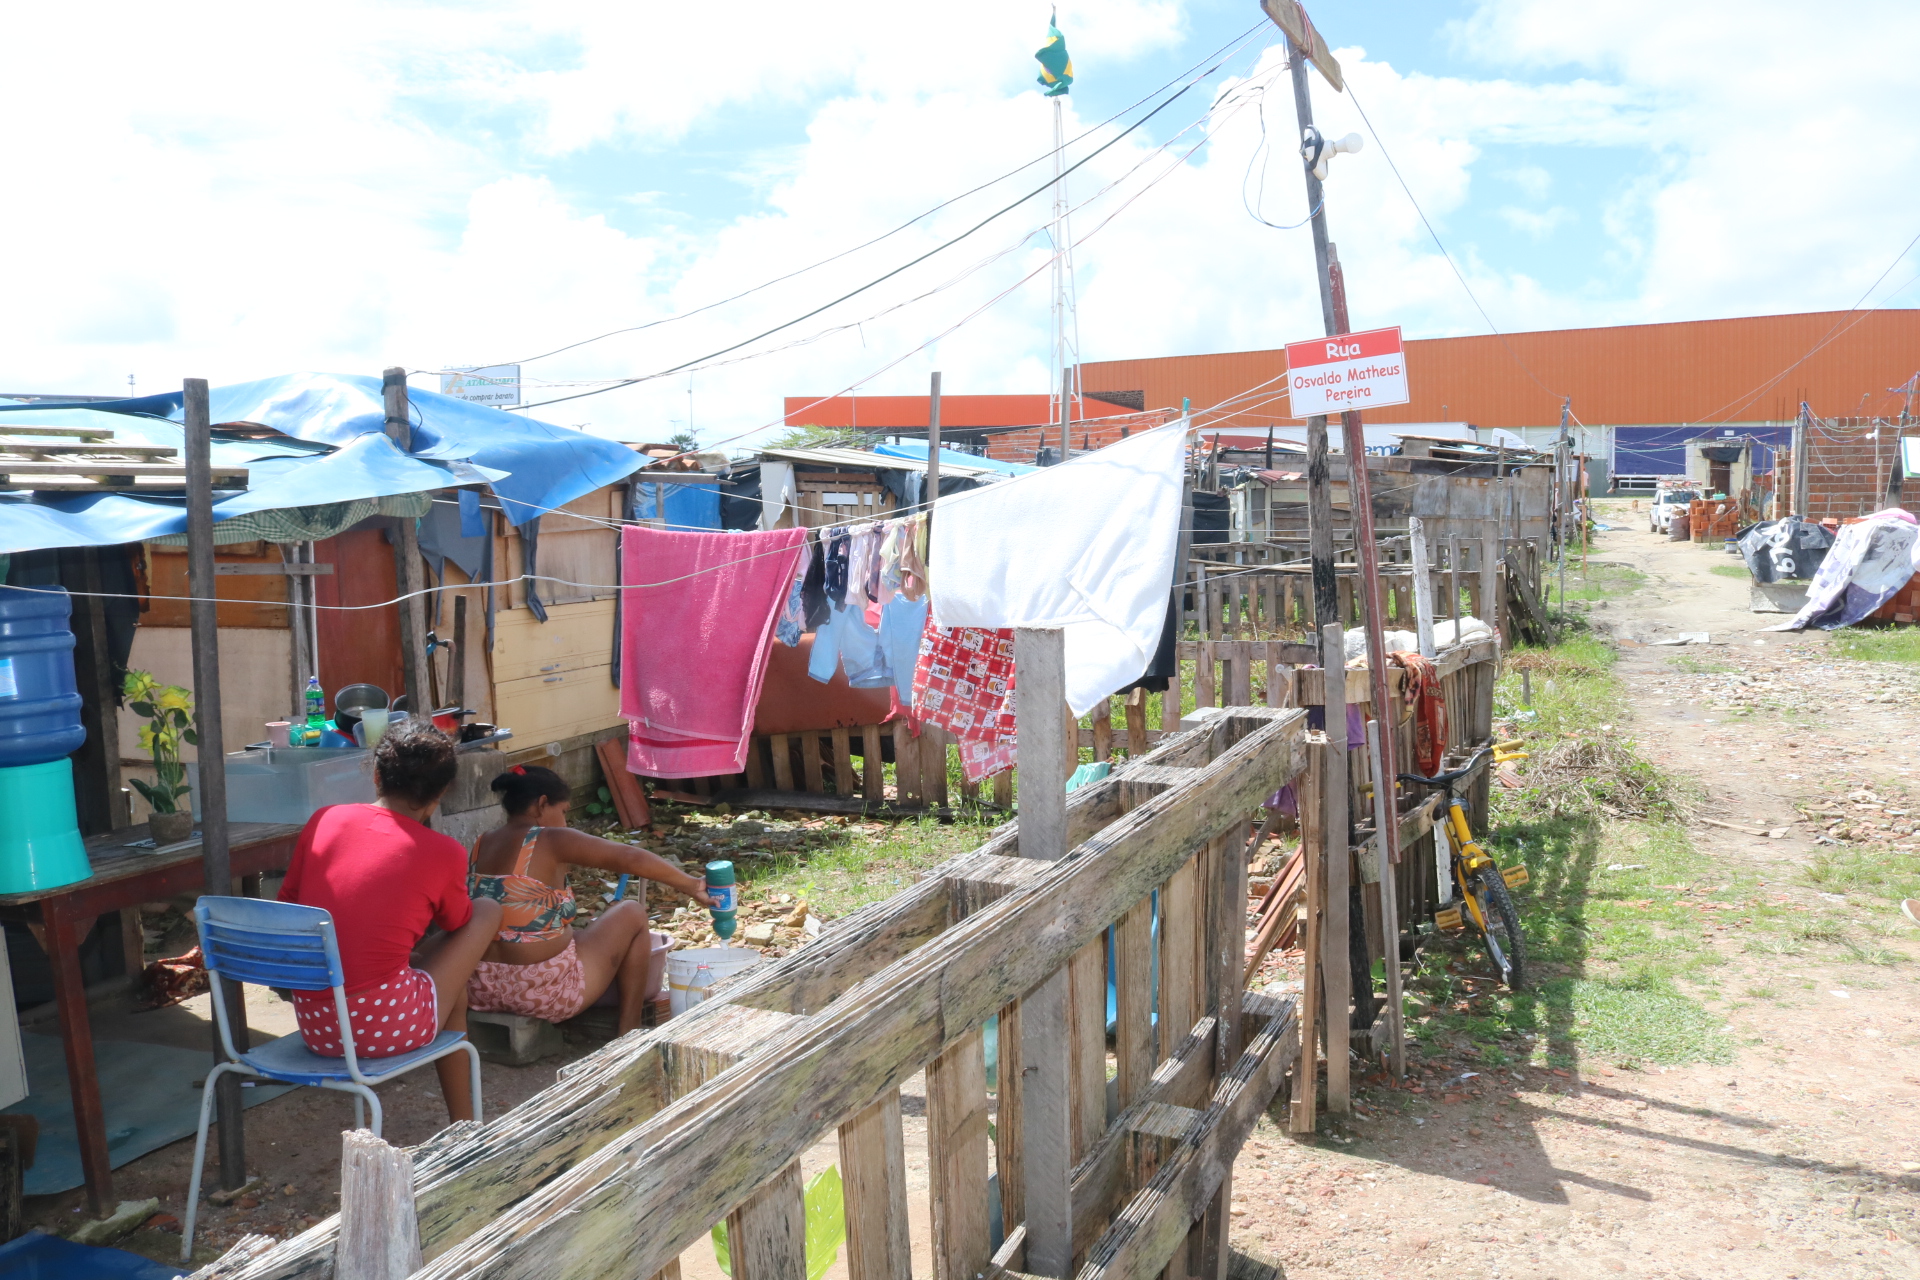 Defensoria Pública acompanha cadastro de famílias residentes em ocupação em frente ao Aeroporto Pinto Martins